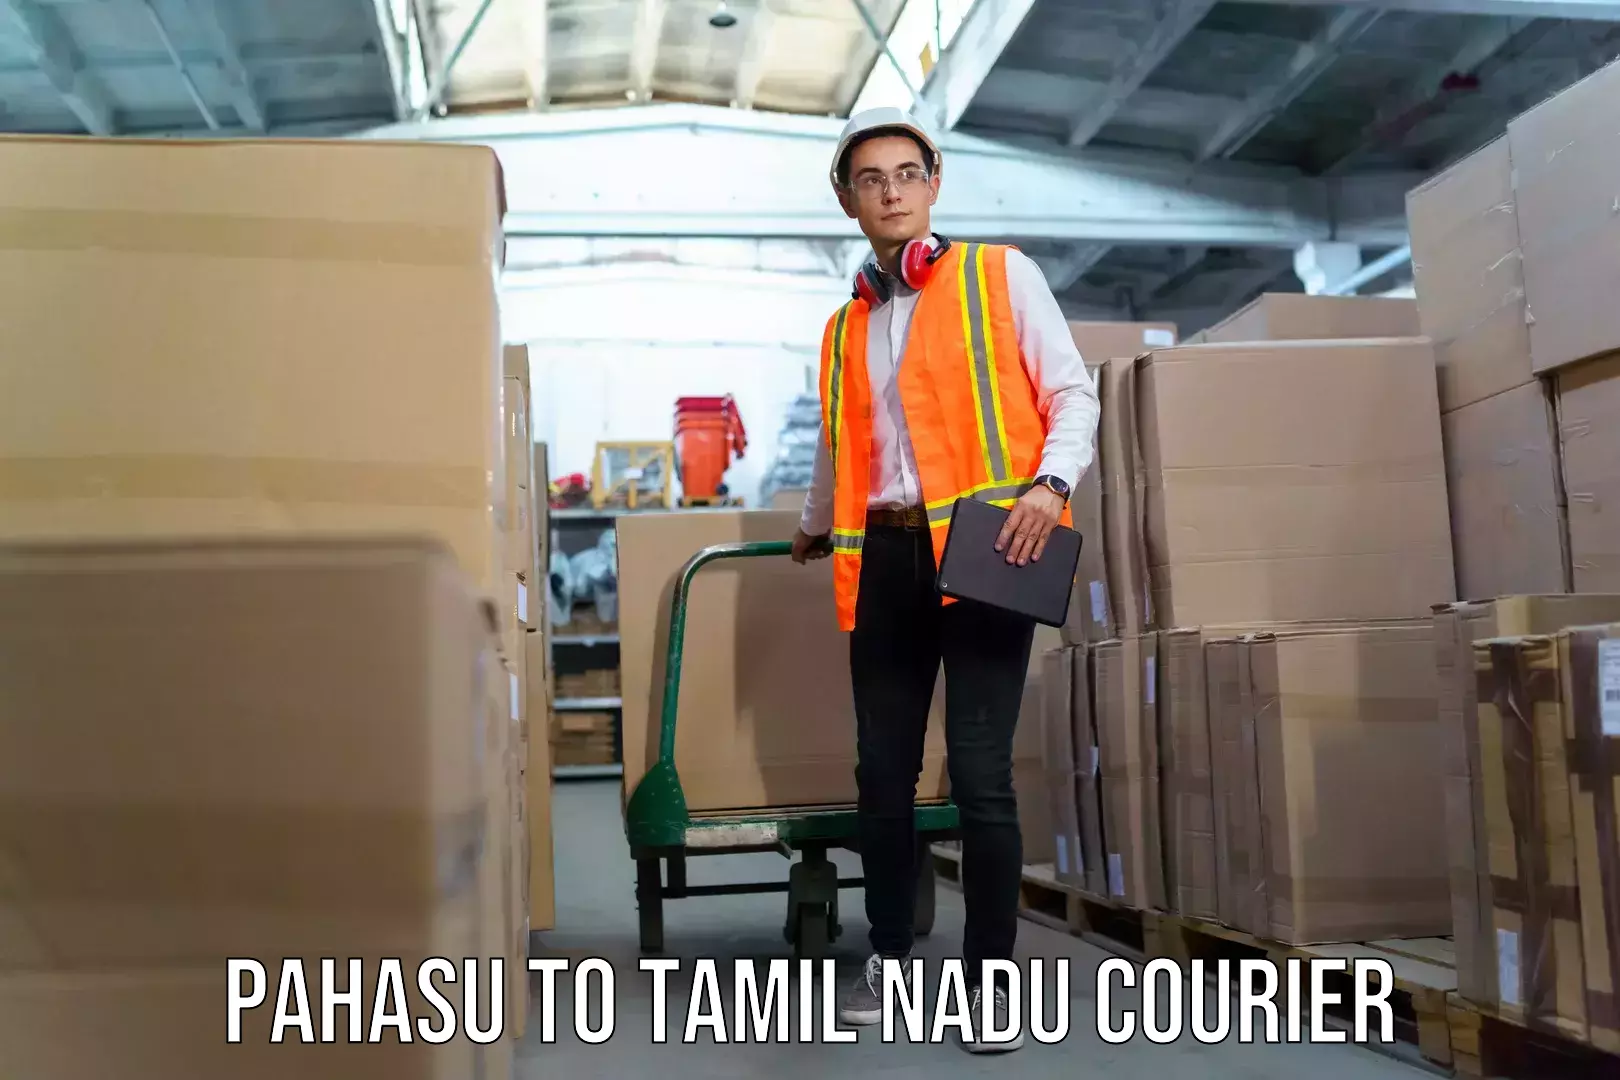 Luggage transport service Pahasu to Tamil Nadu